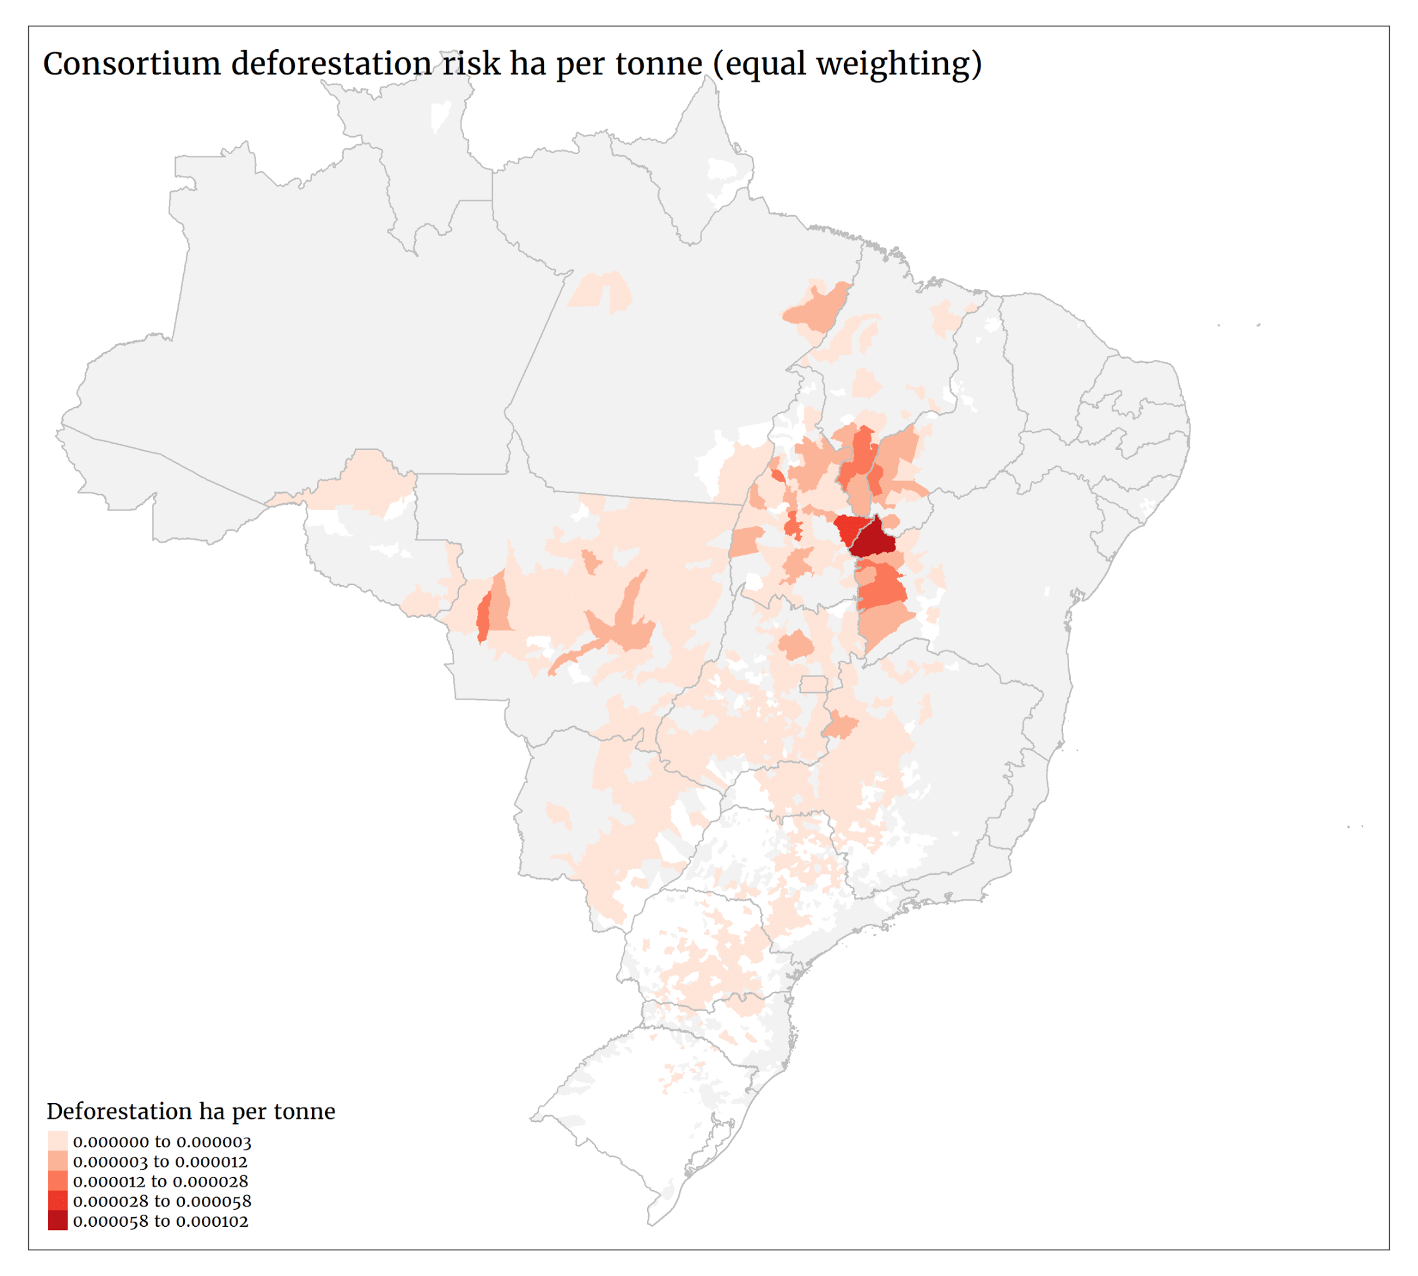 ReLI consortium deforestation risk per tonne bought from Brazil